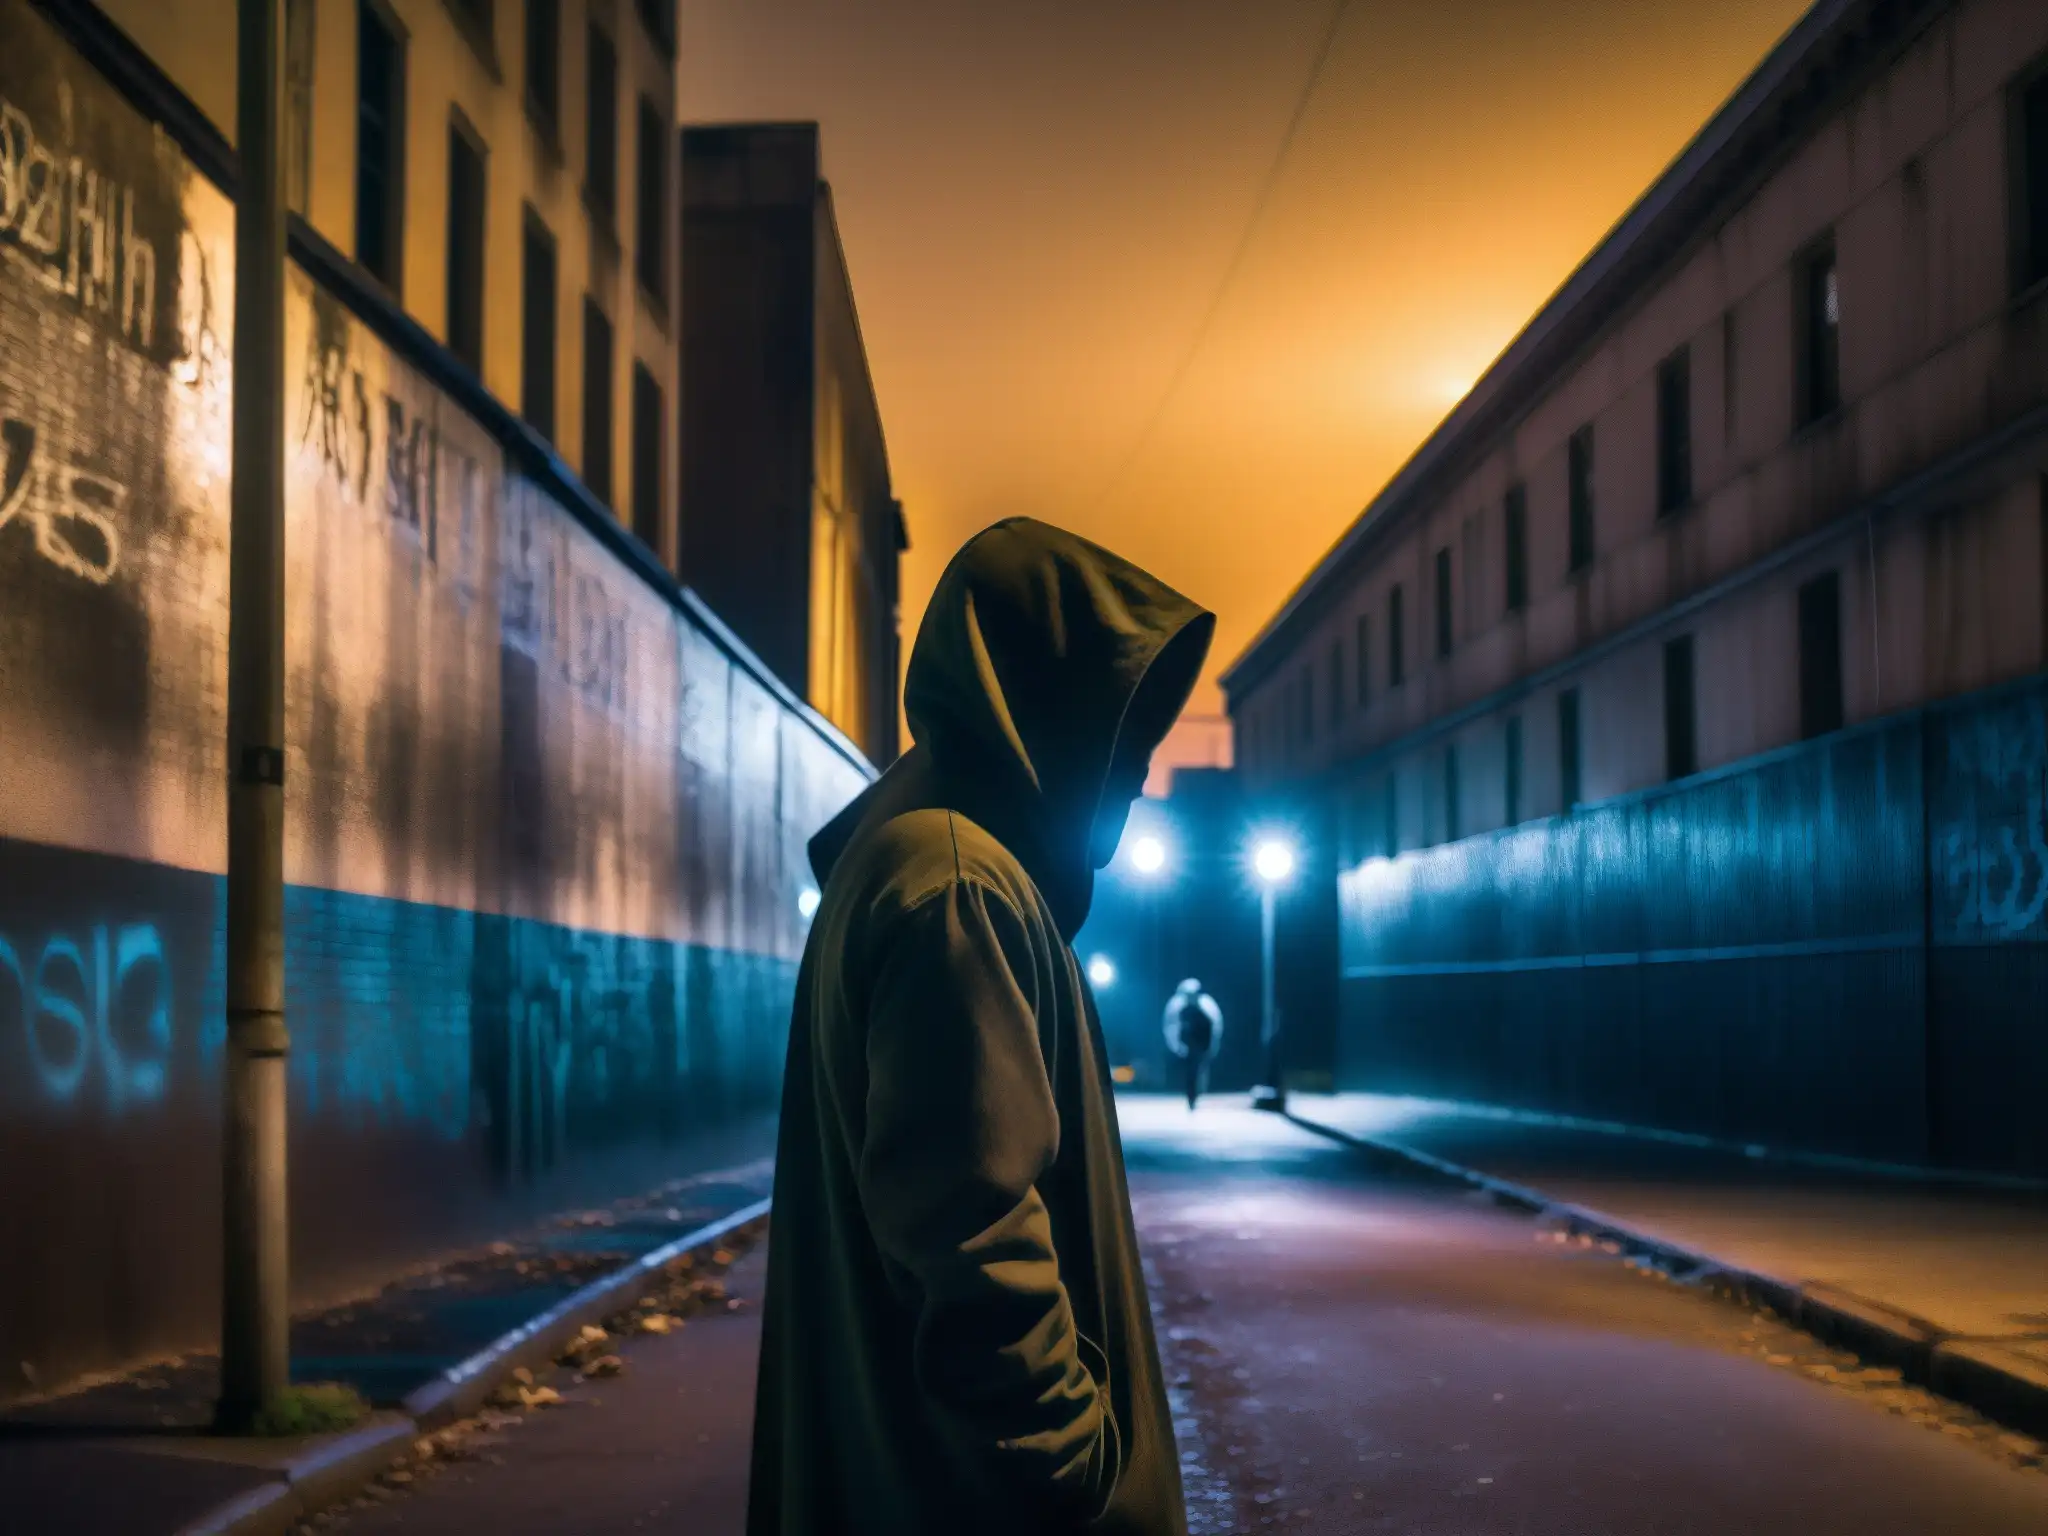 Un oscuro callejón urbano de noche con figuras misteriosas, reflejando la función advertidora de leyendas urbanas